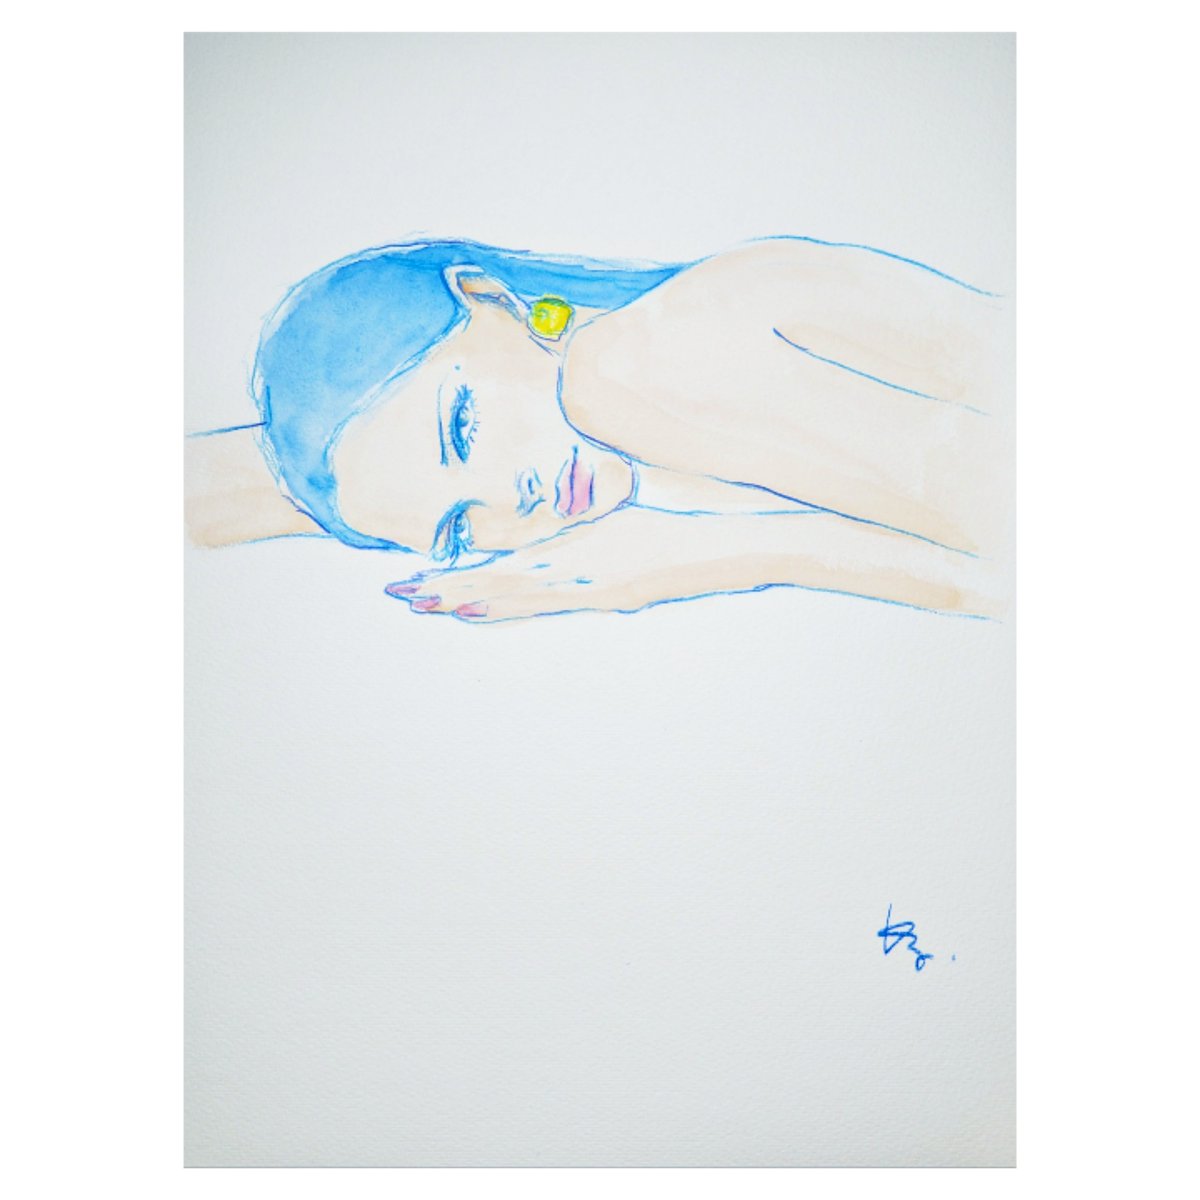 2024.0427
ー 退屈させないで ー
#drawing #dessin #artwork #illustration #womanportrait #blue #青 #イラスト #デッサン #福岡 #日課 #美人画 #人物画 #kazuko_sketch_